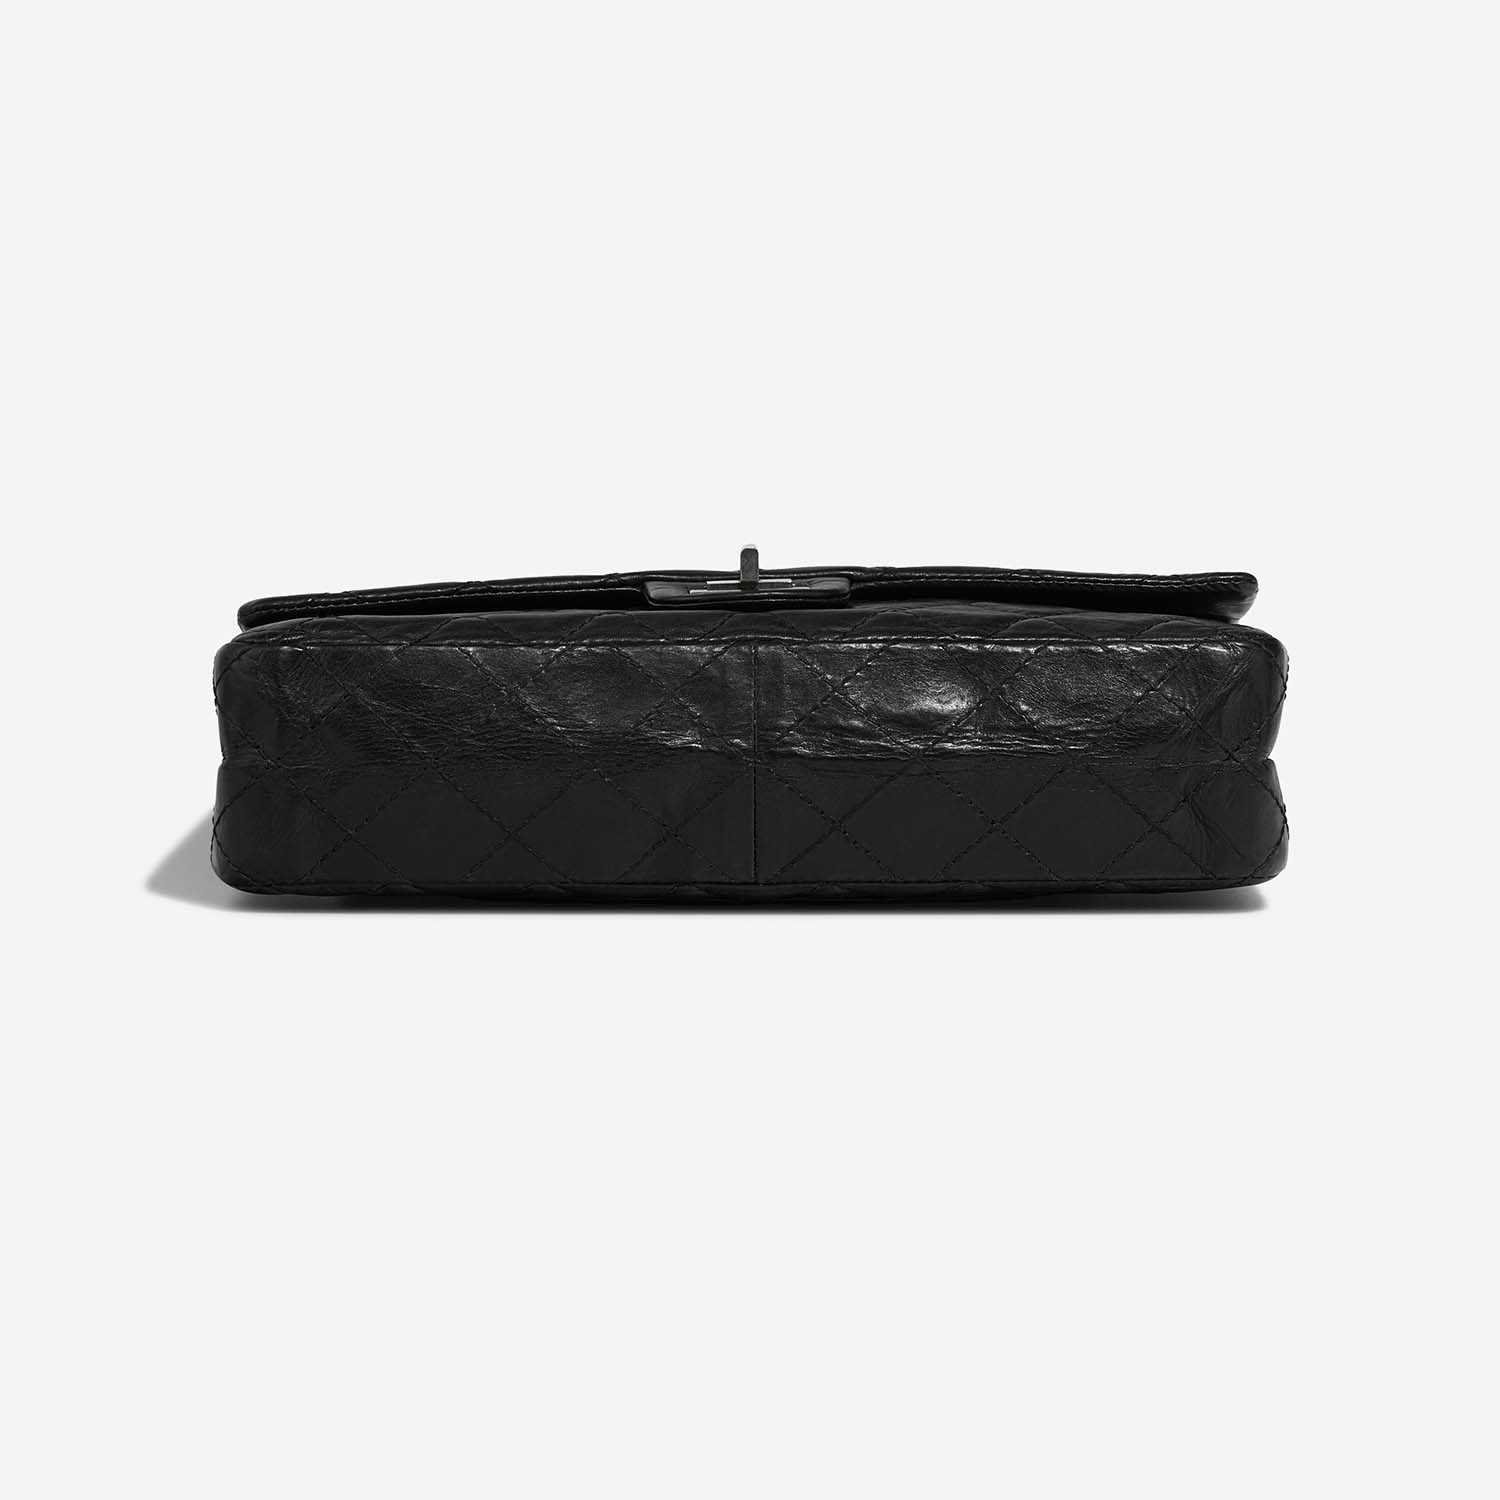 Chanel 255 226 Black Bottom | Verkaufen Sie Ihre Designer-Tasche auf Saclab.com